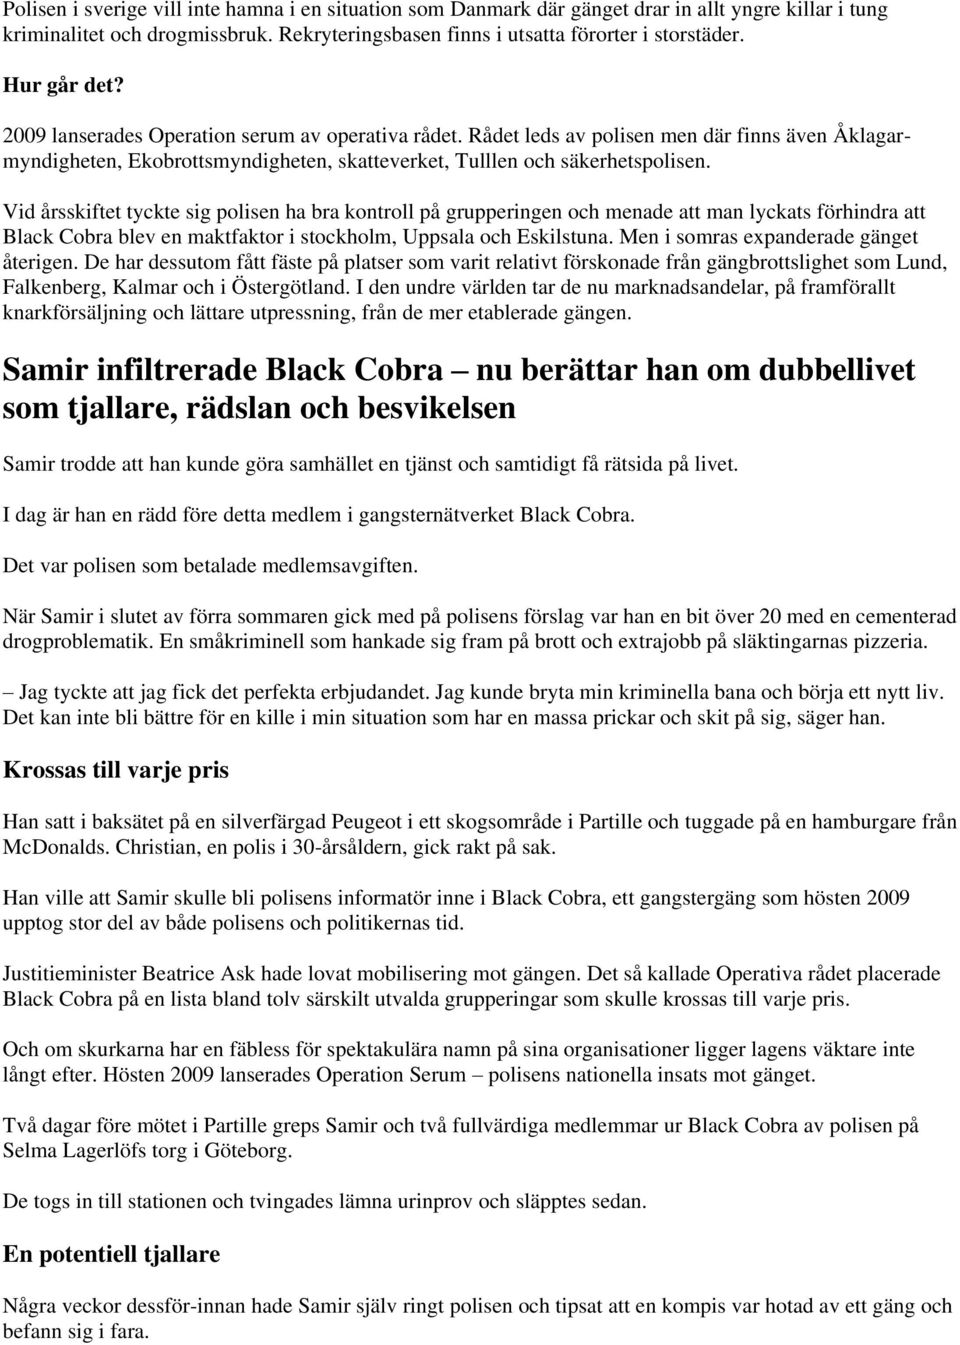 Vid årsskiftet tyckte sig polisen ha bra kontroll på grupperingen och menade att man lyckats förhindra att Black Cobra blev en maktfaktor i stockholm, Uppsala och Eskilstuna.